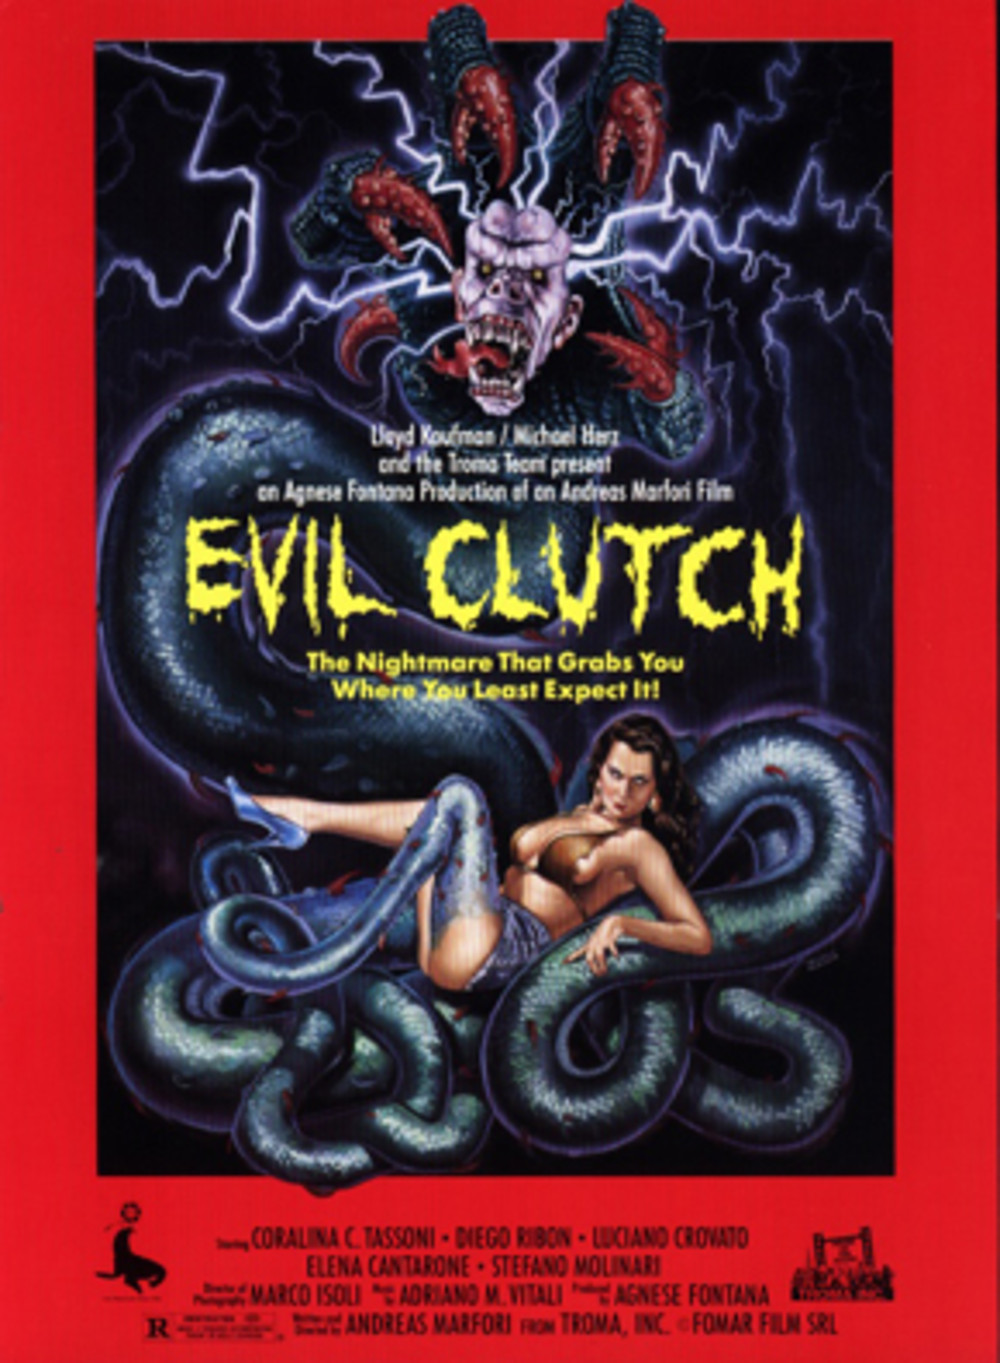 Evil Clutch